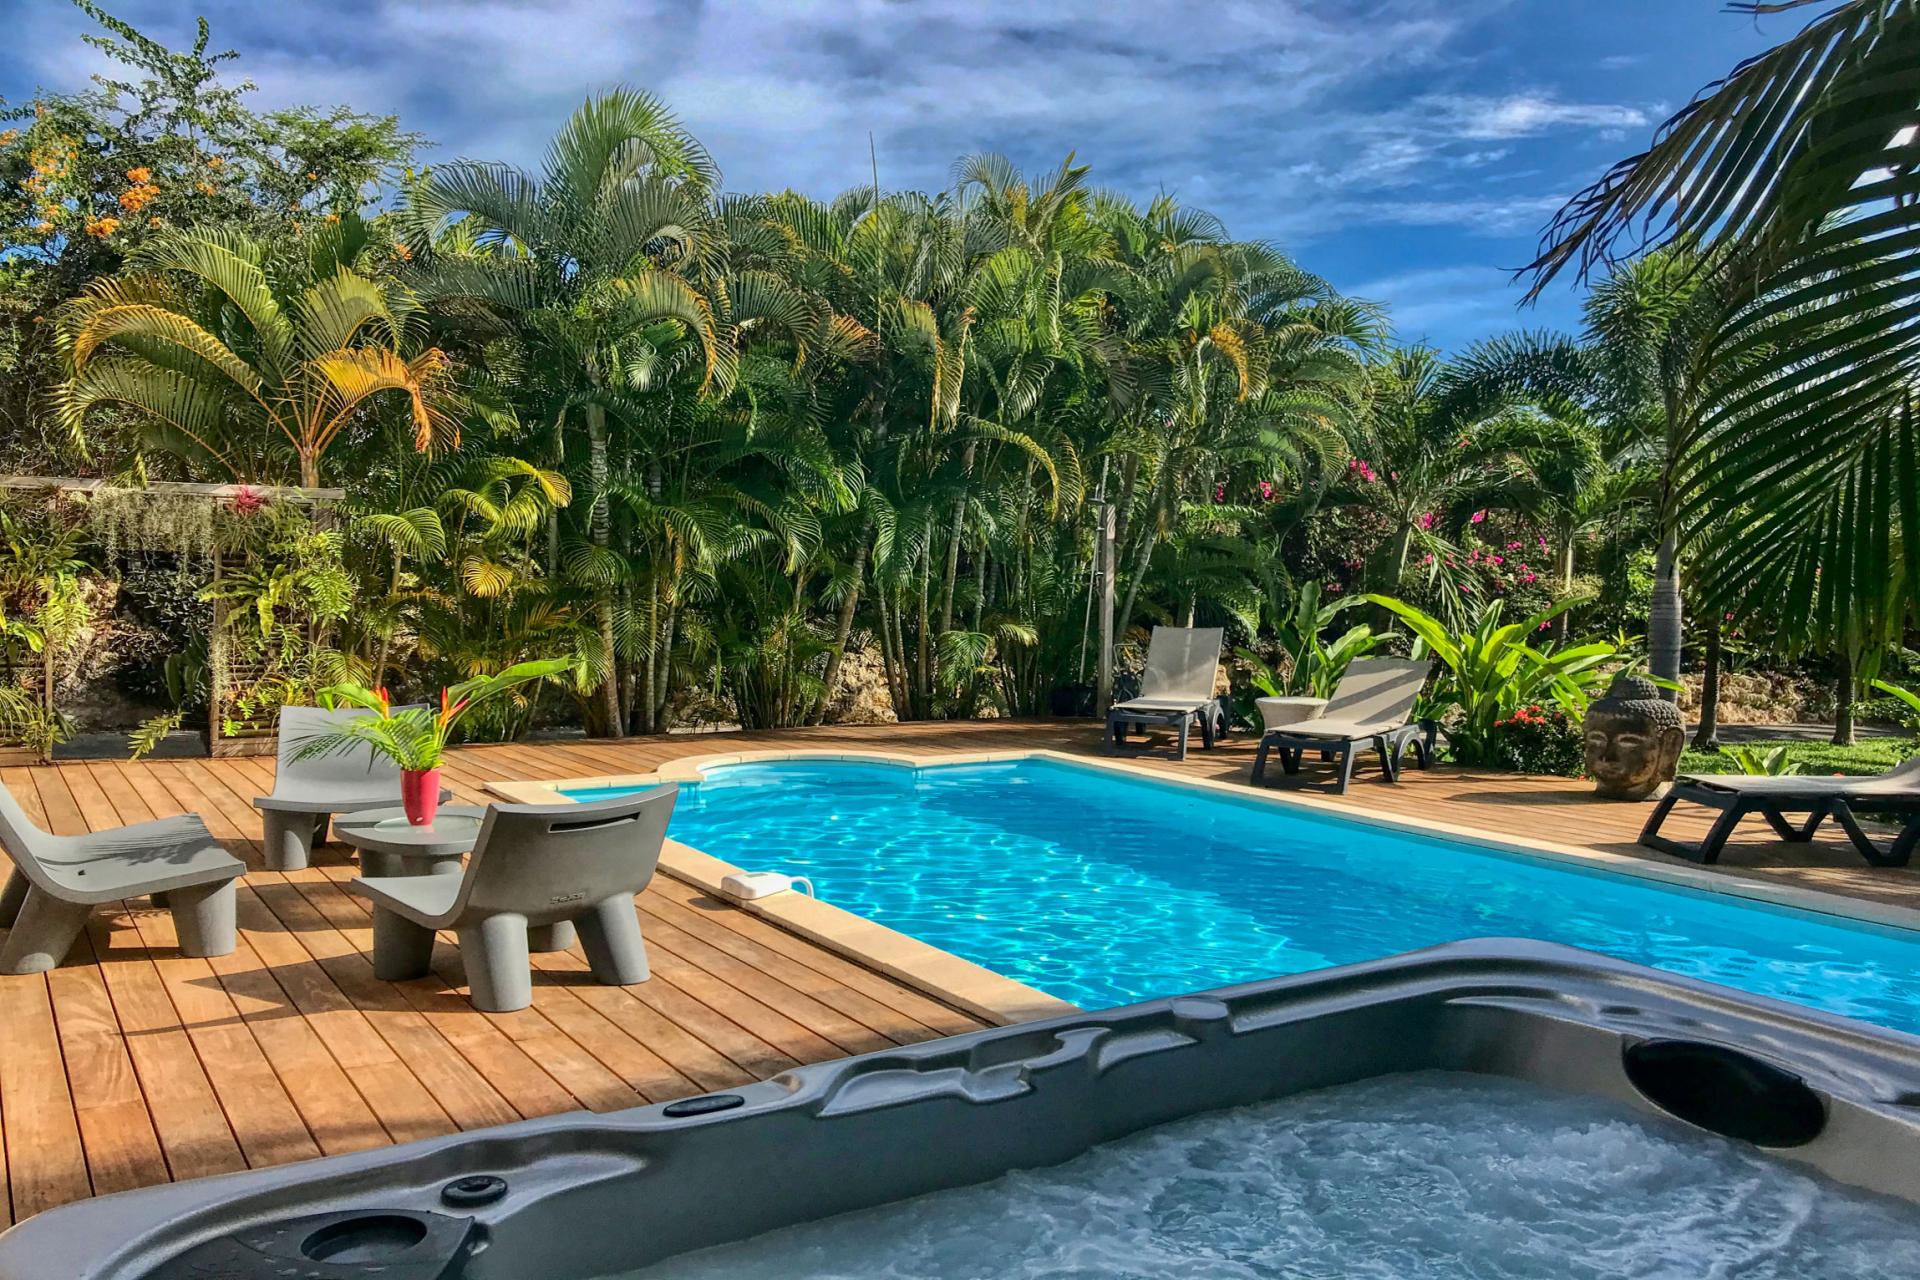 Location villa de standing en Guadeloupe St François avec piscine et jacuzzi 3 chambres pour 6 personnes 